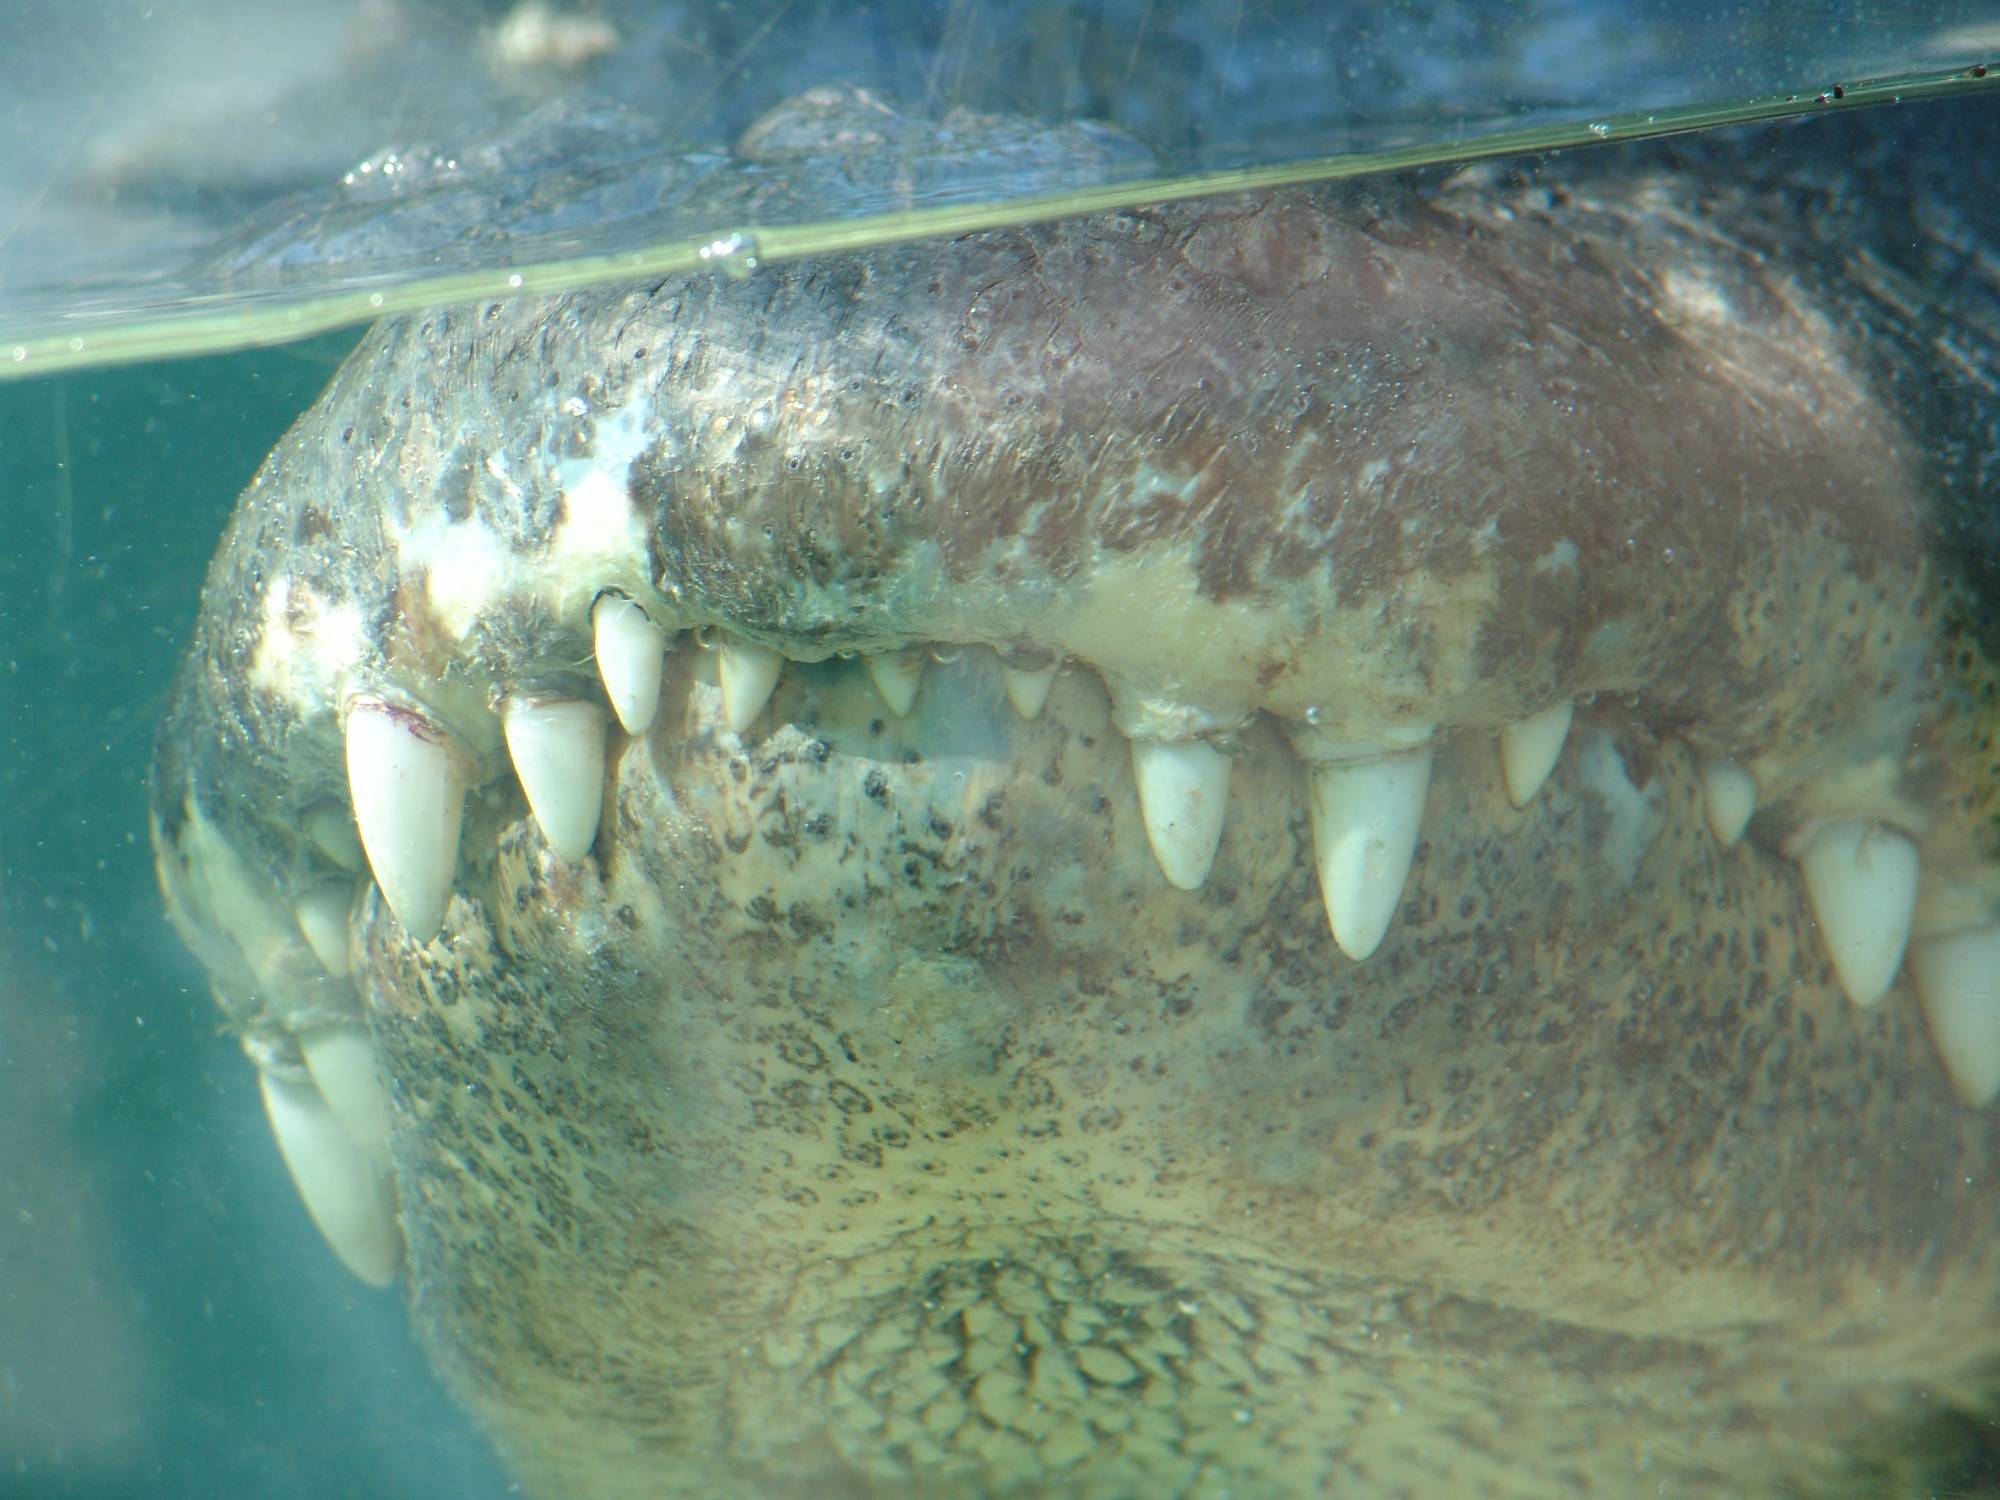 Busch Gardens Tampa - alligator teeth